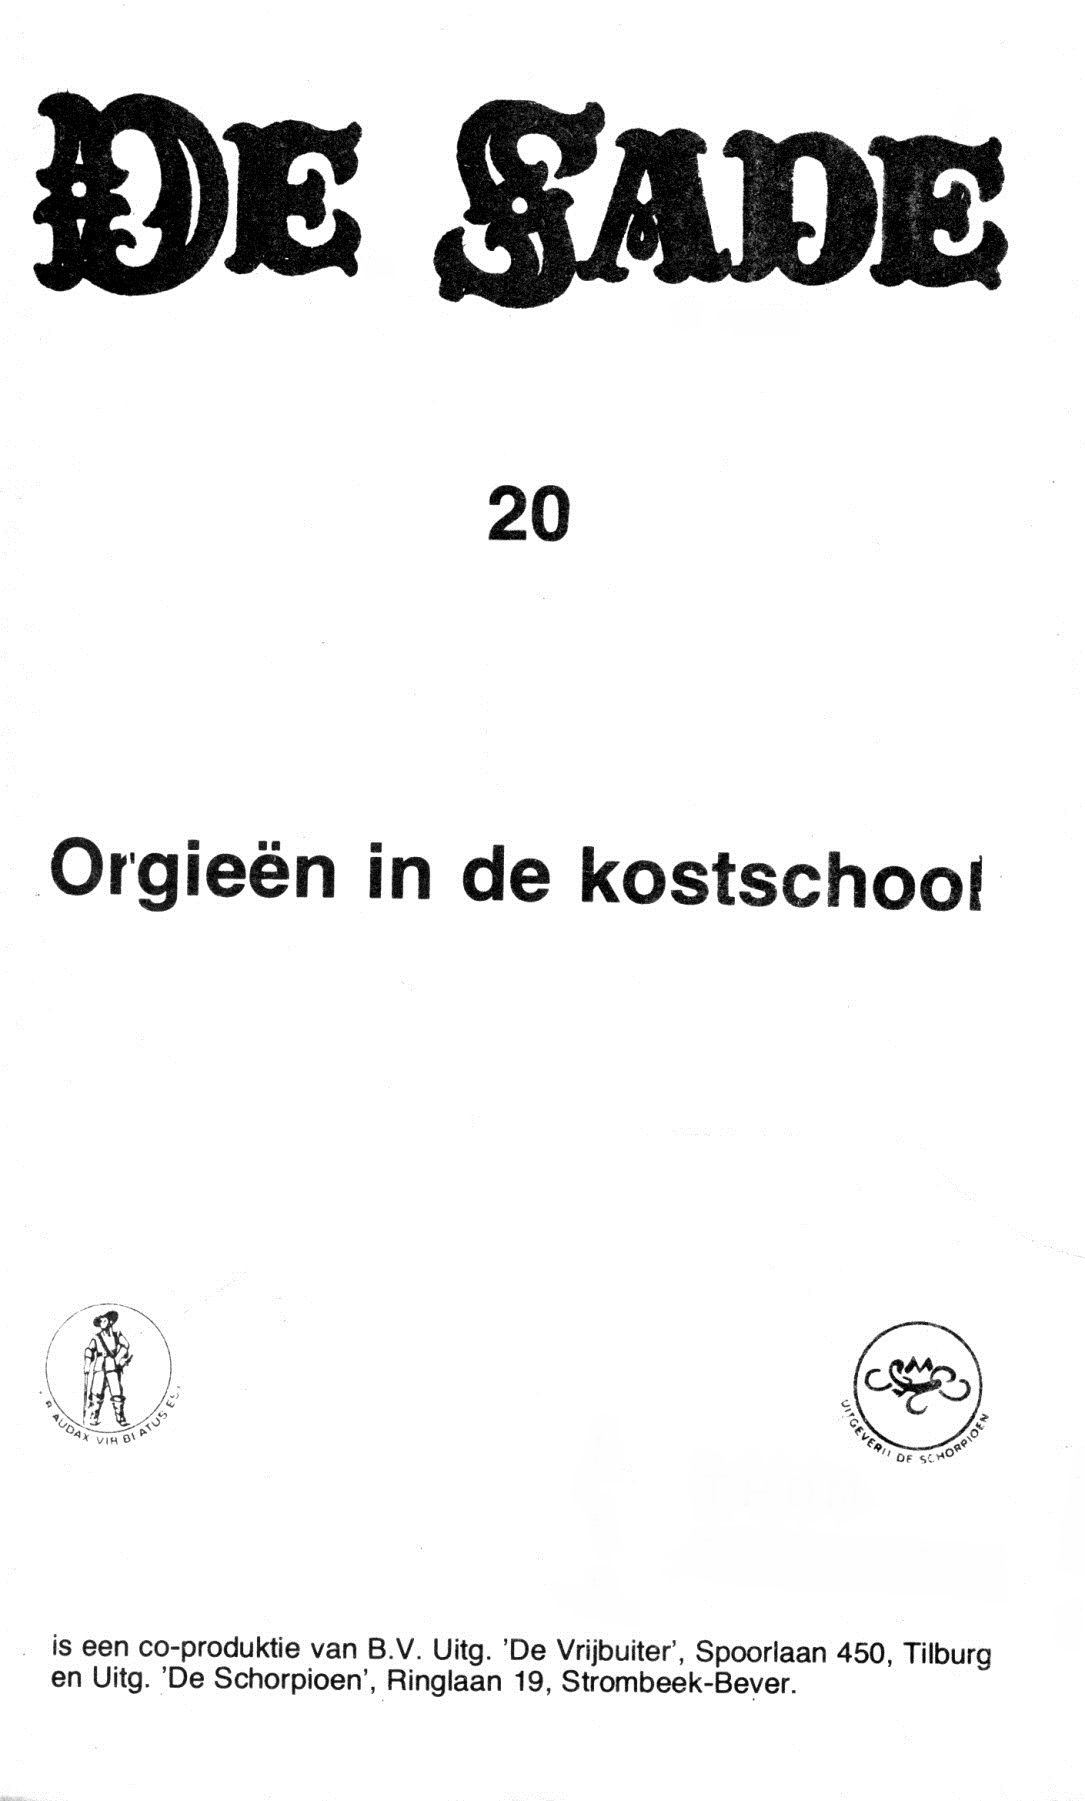 Orgieën In De Kostschool (Dutch) In 5 series...53 Nog niet geplaatste strips uit de "De Sade" serie 2